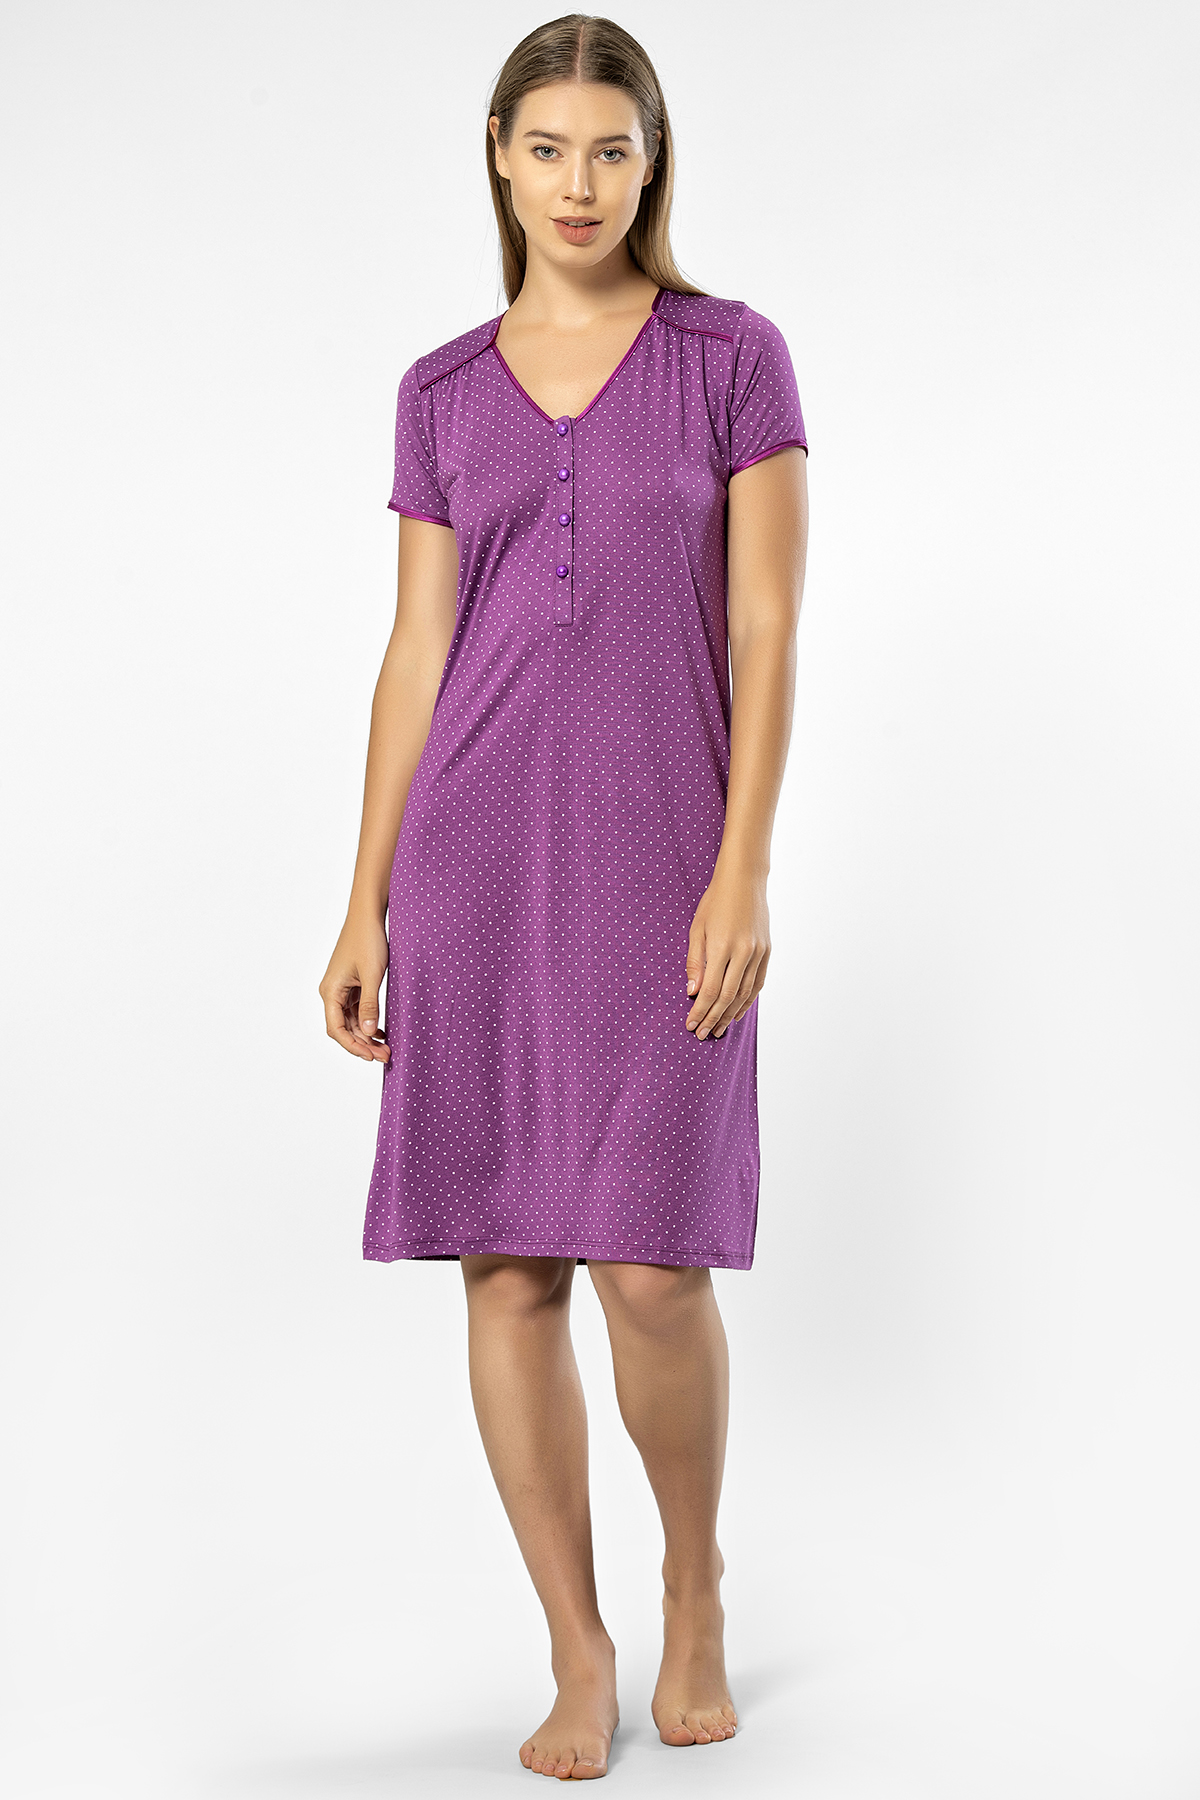 Ночная сорочка женская Turen 3293 фиолетовая XL